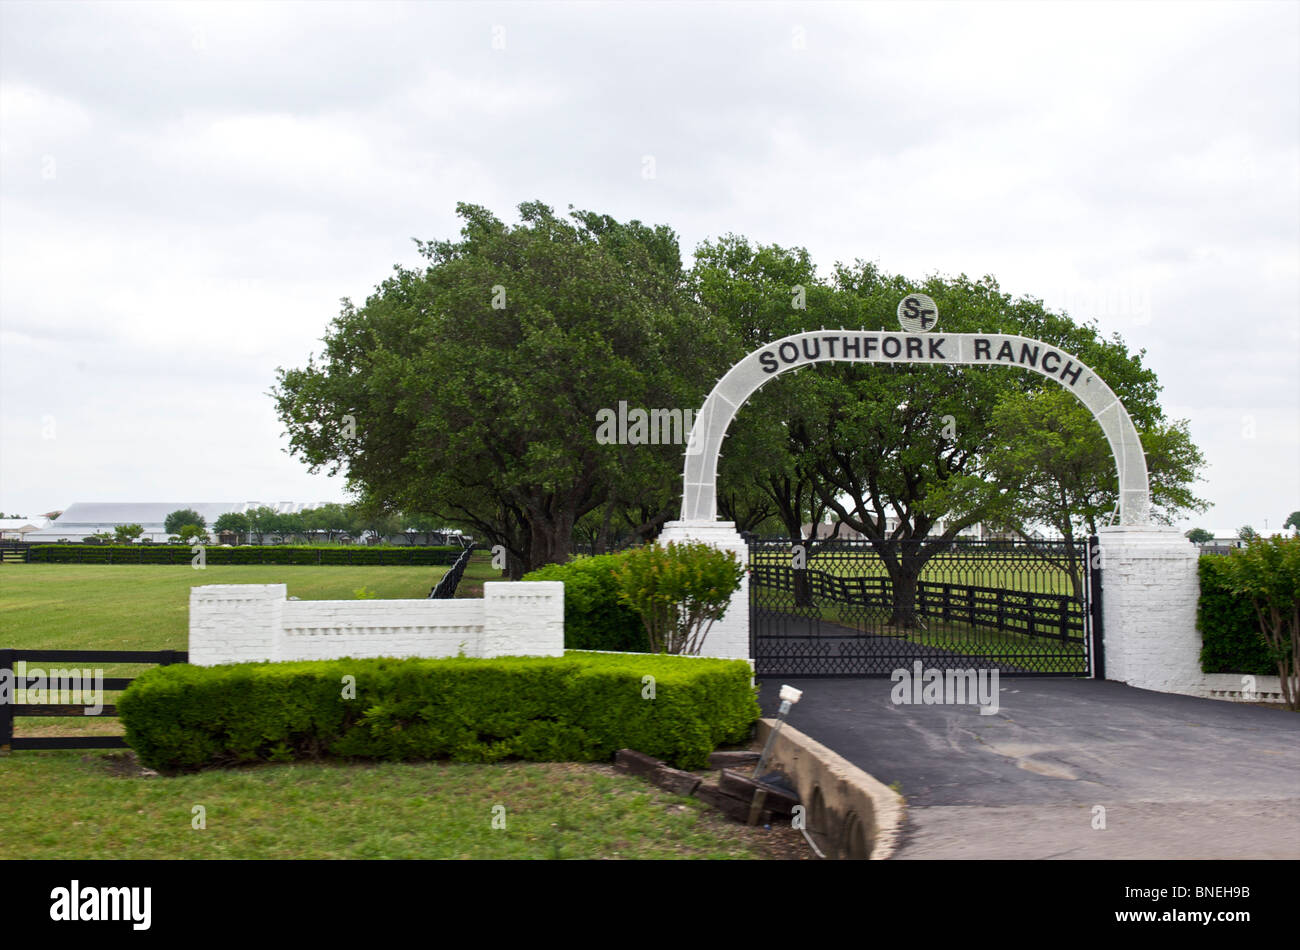 Puerta de entrada del rancho Southfork en Dallas, Texas, EE.UU. Foto de stock